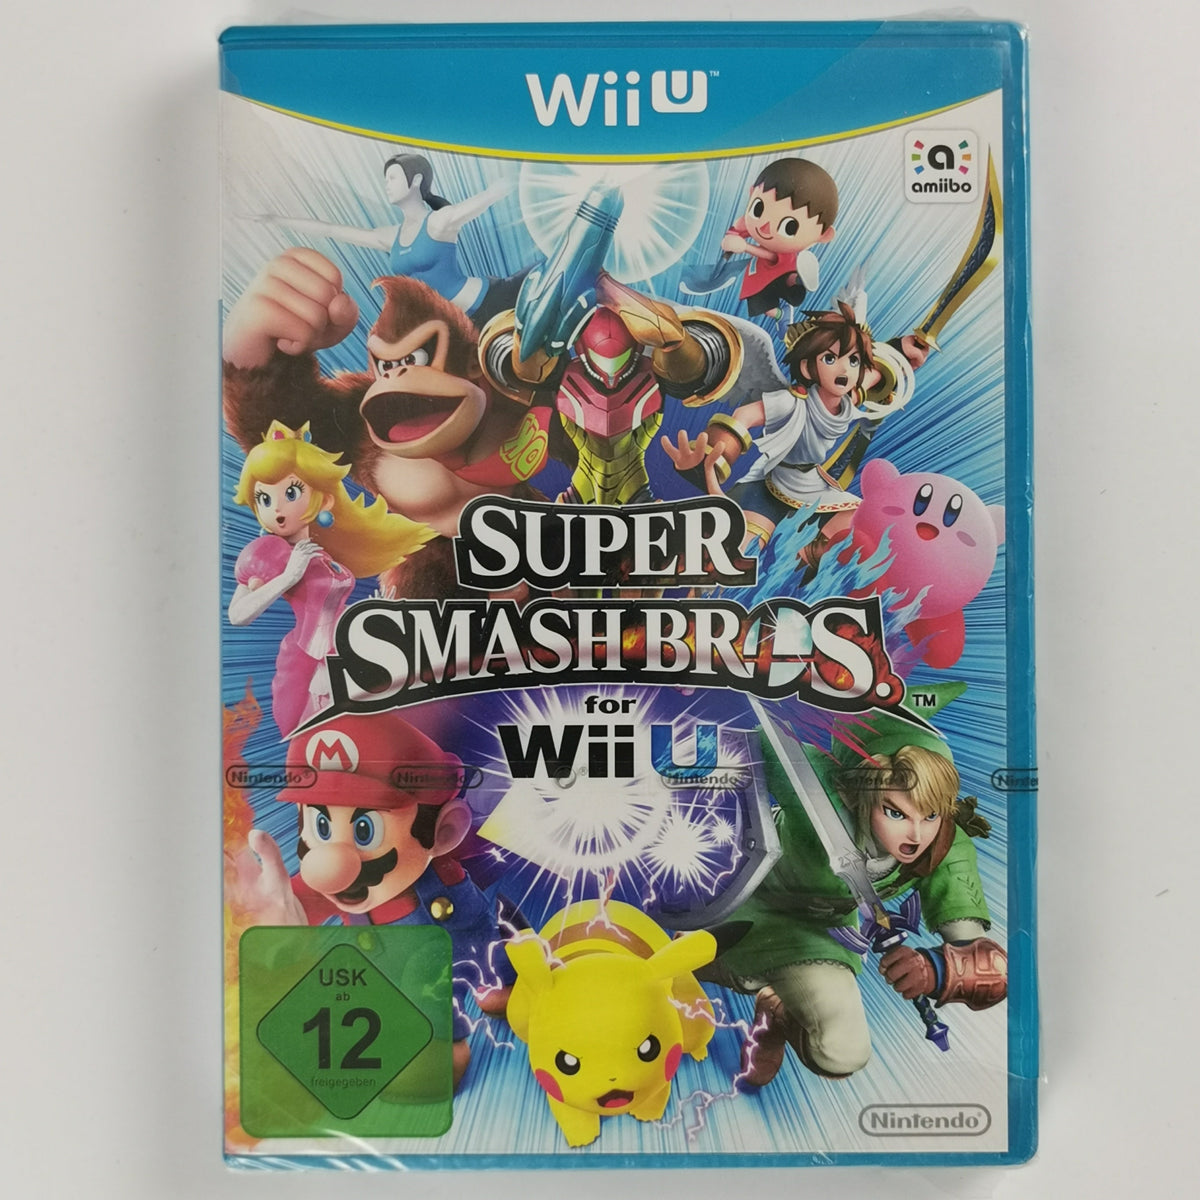 Super Smash Bros for Wii U [WiiU]